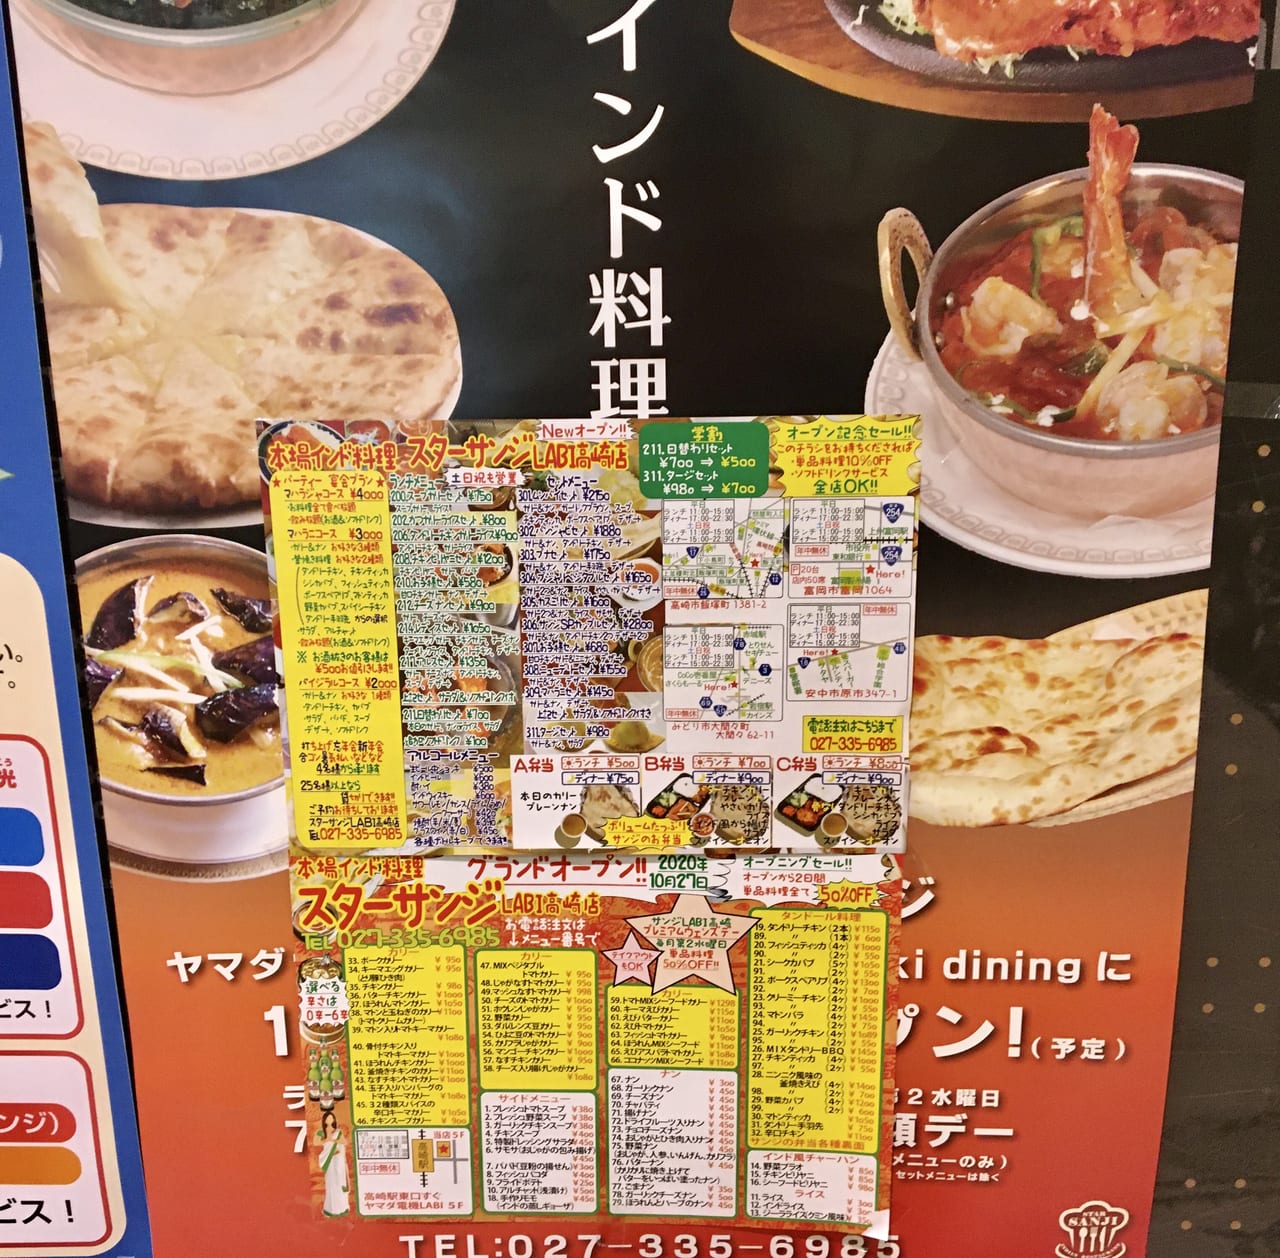 高崎市 人気インド料理店 スターサンジ がヤマダ電機labi1高崎に開店しました 号外net 高崎市